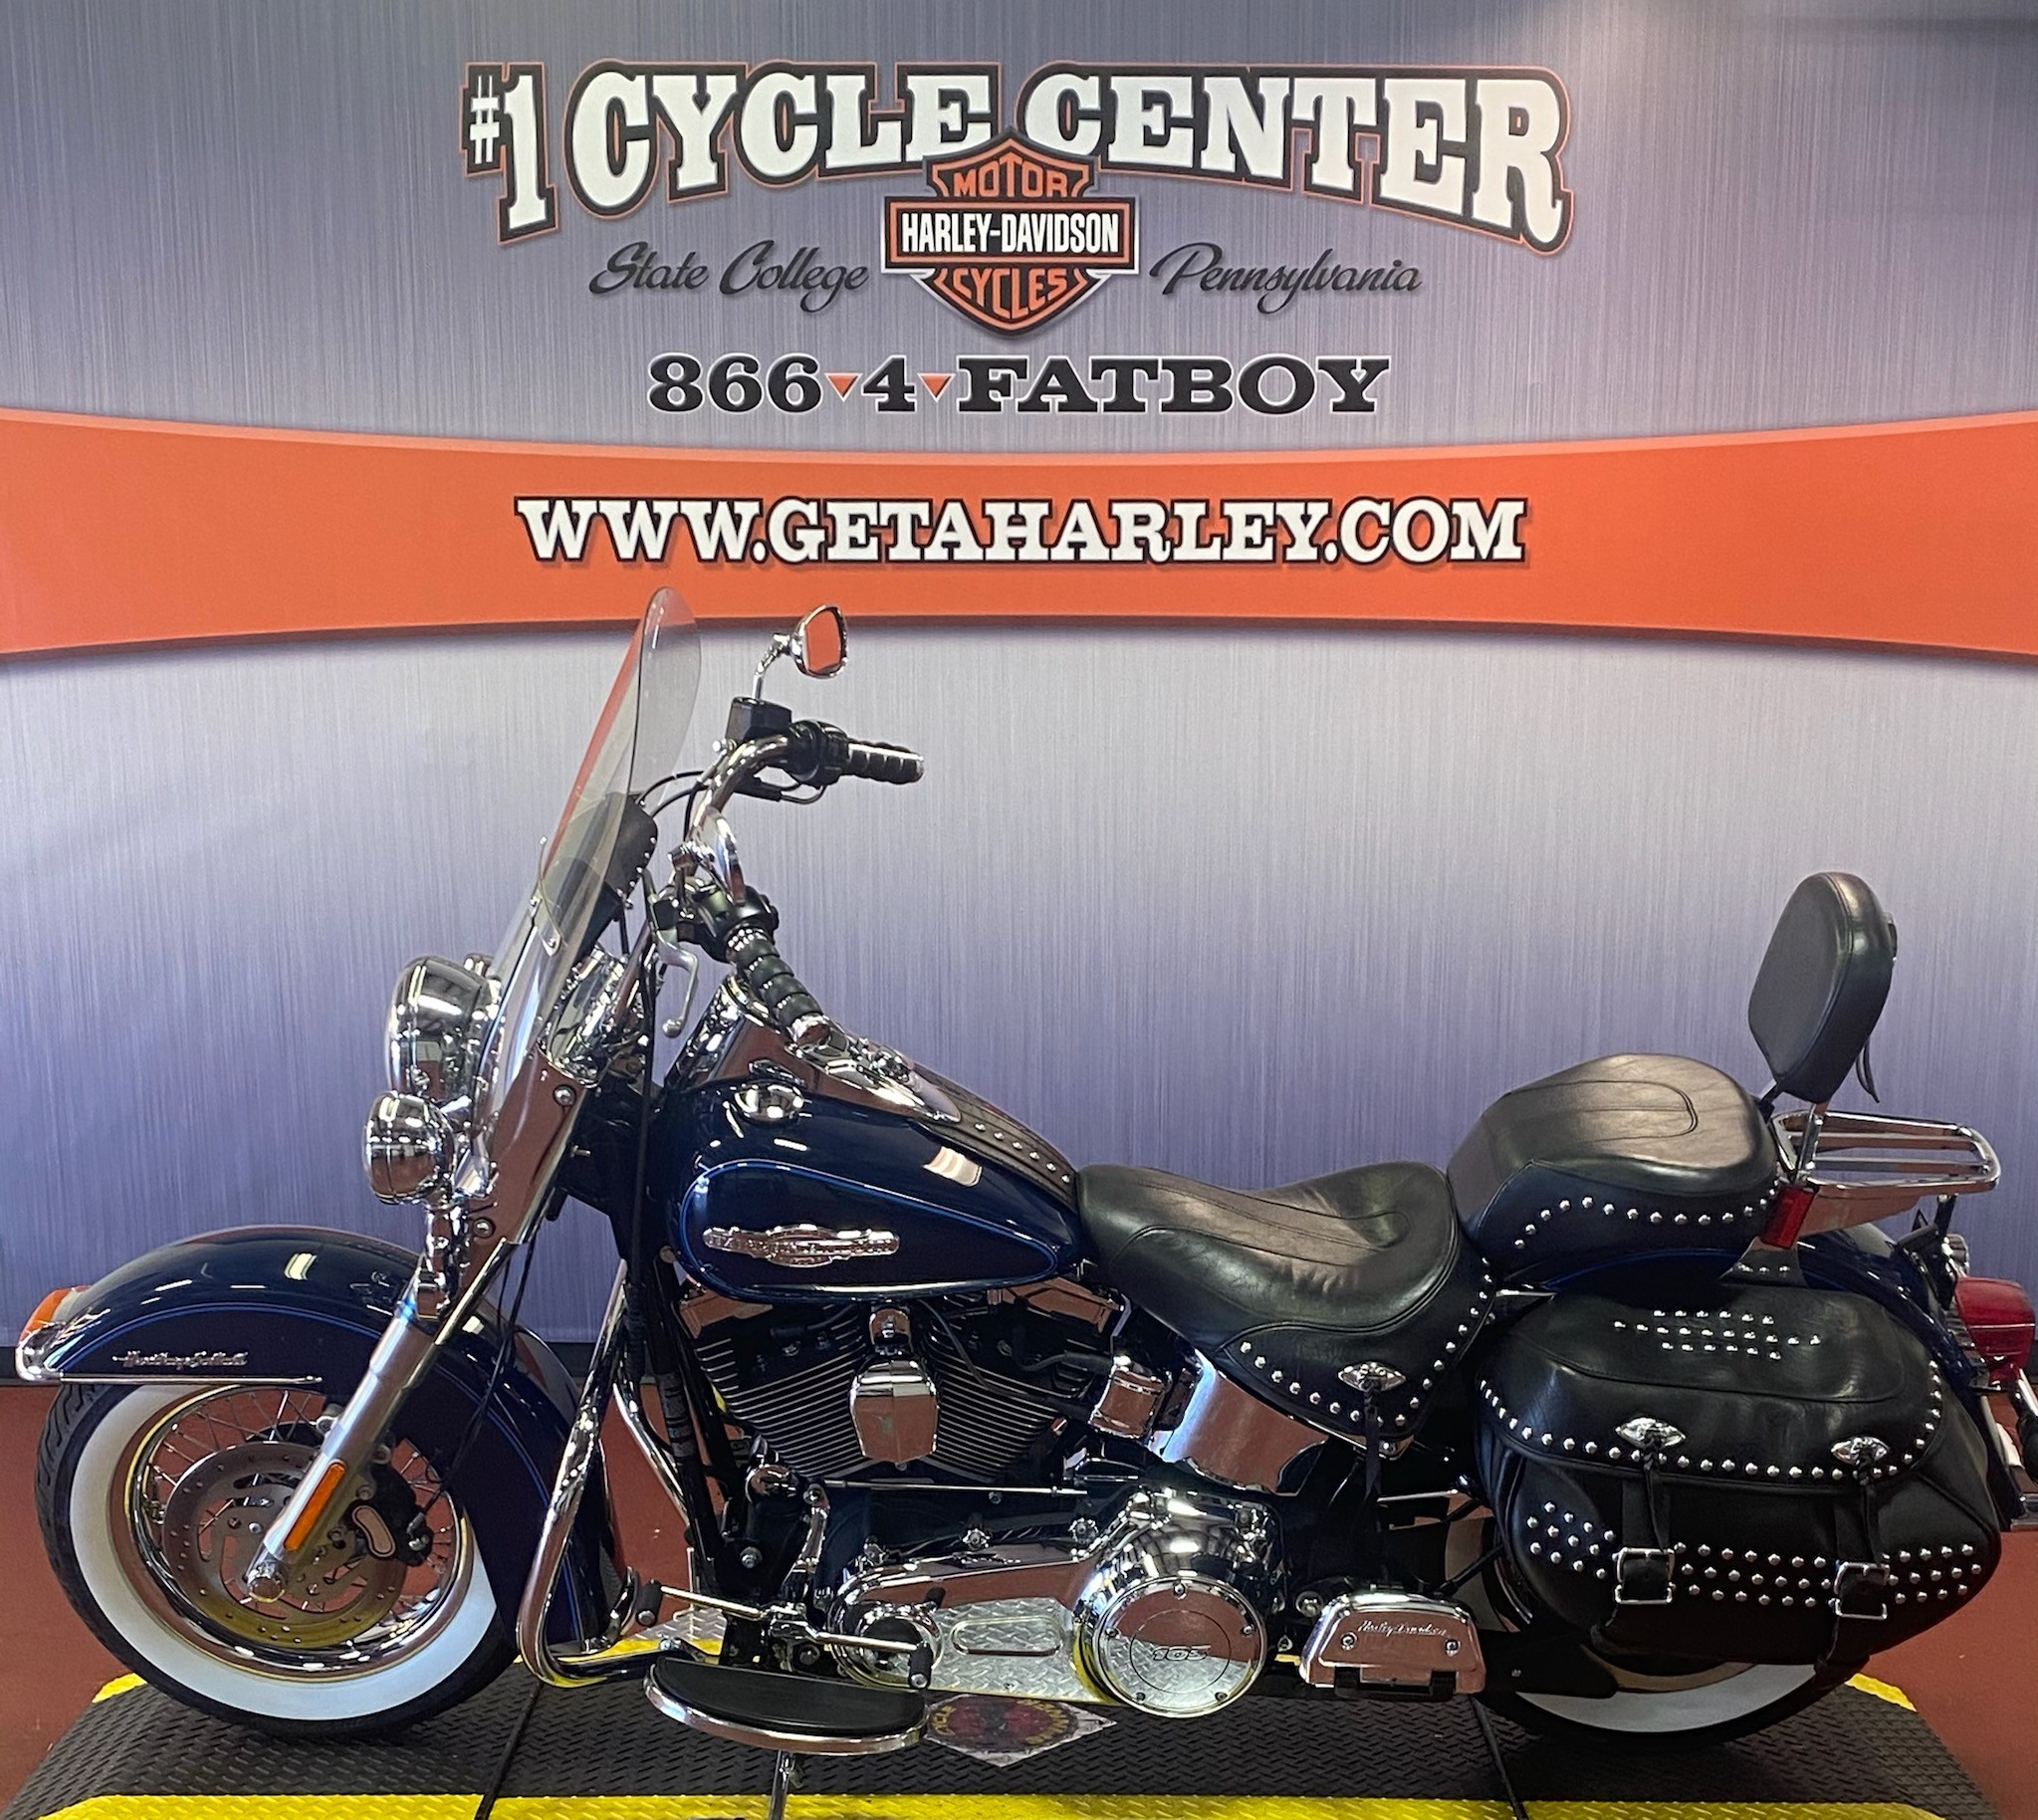 2013 Harley-Davidson FLSTC103 SHRINE at #1 Cycle Center Harley-Davidson